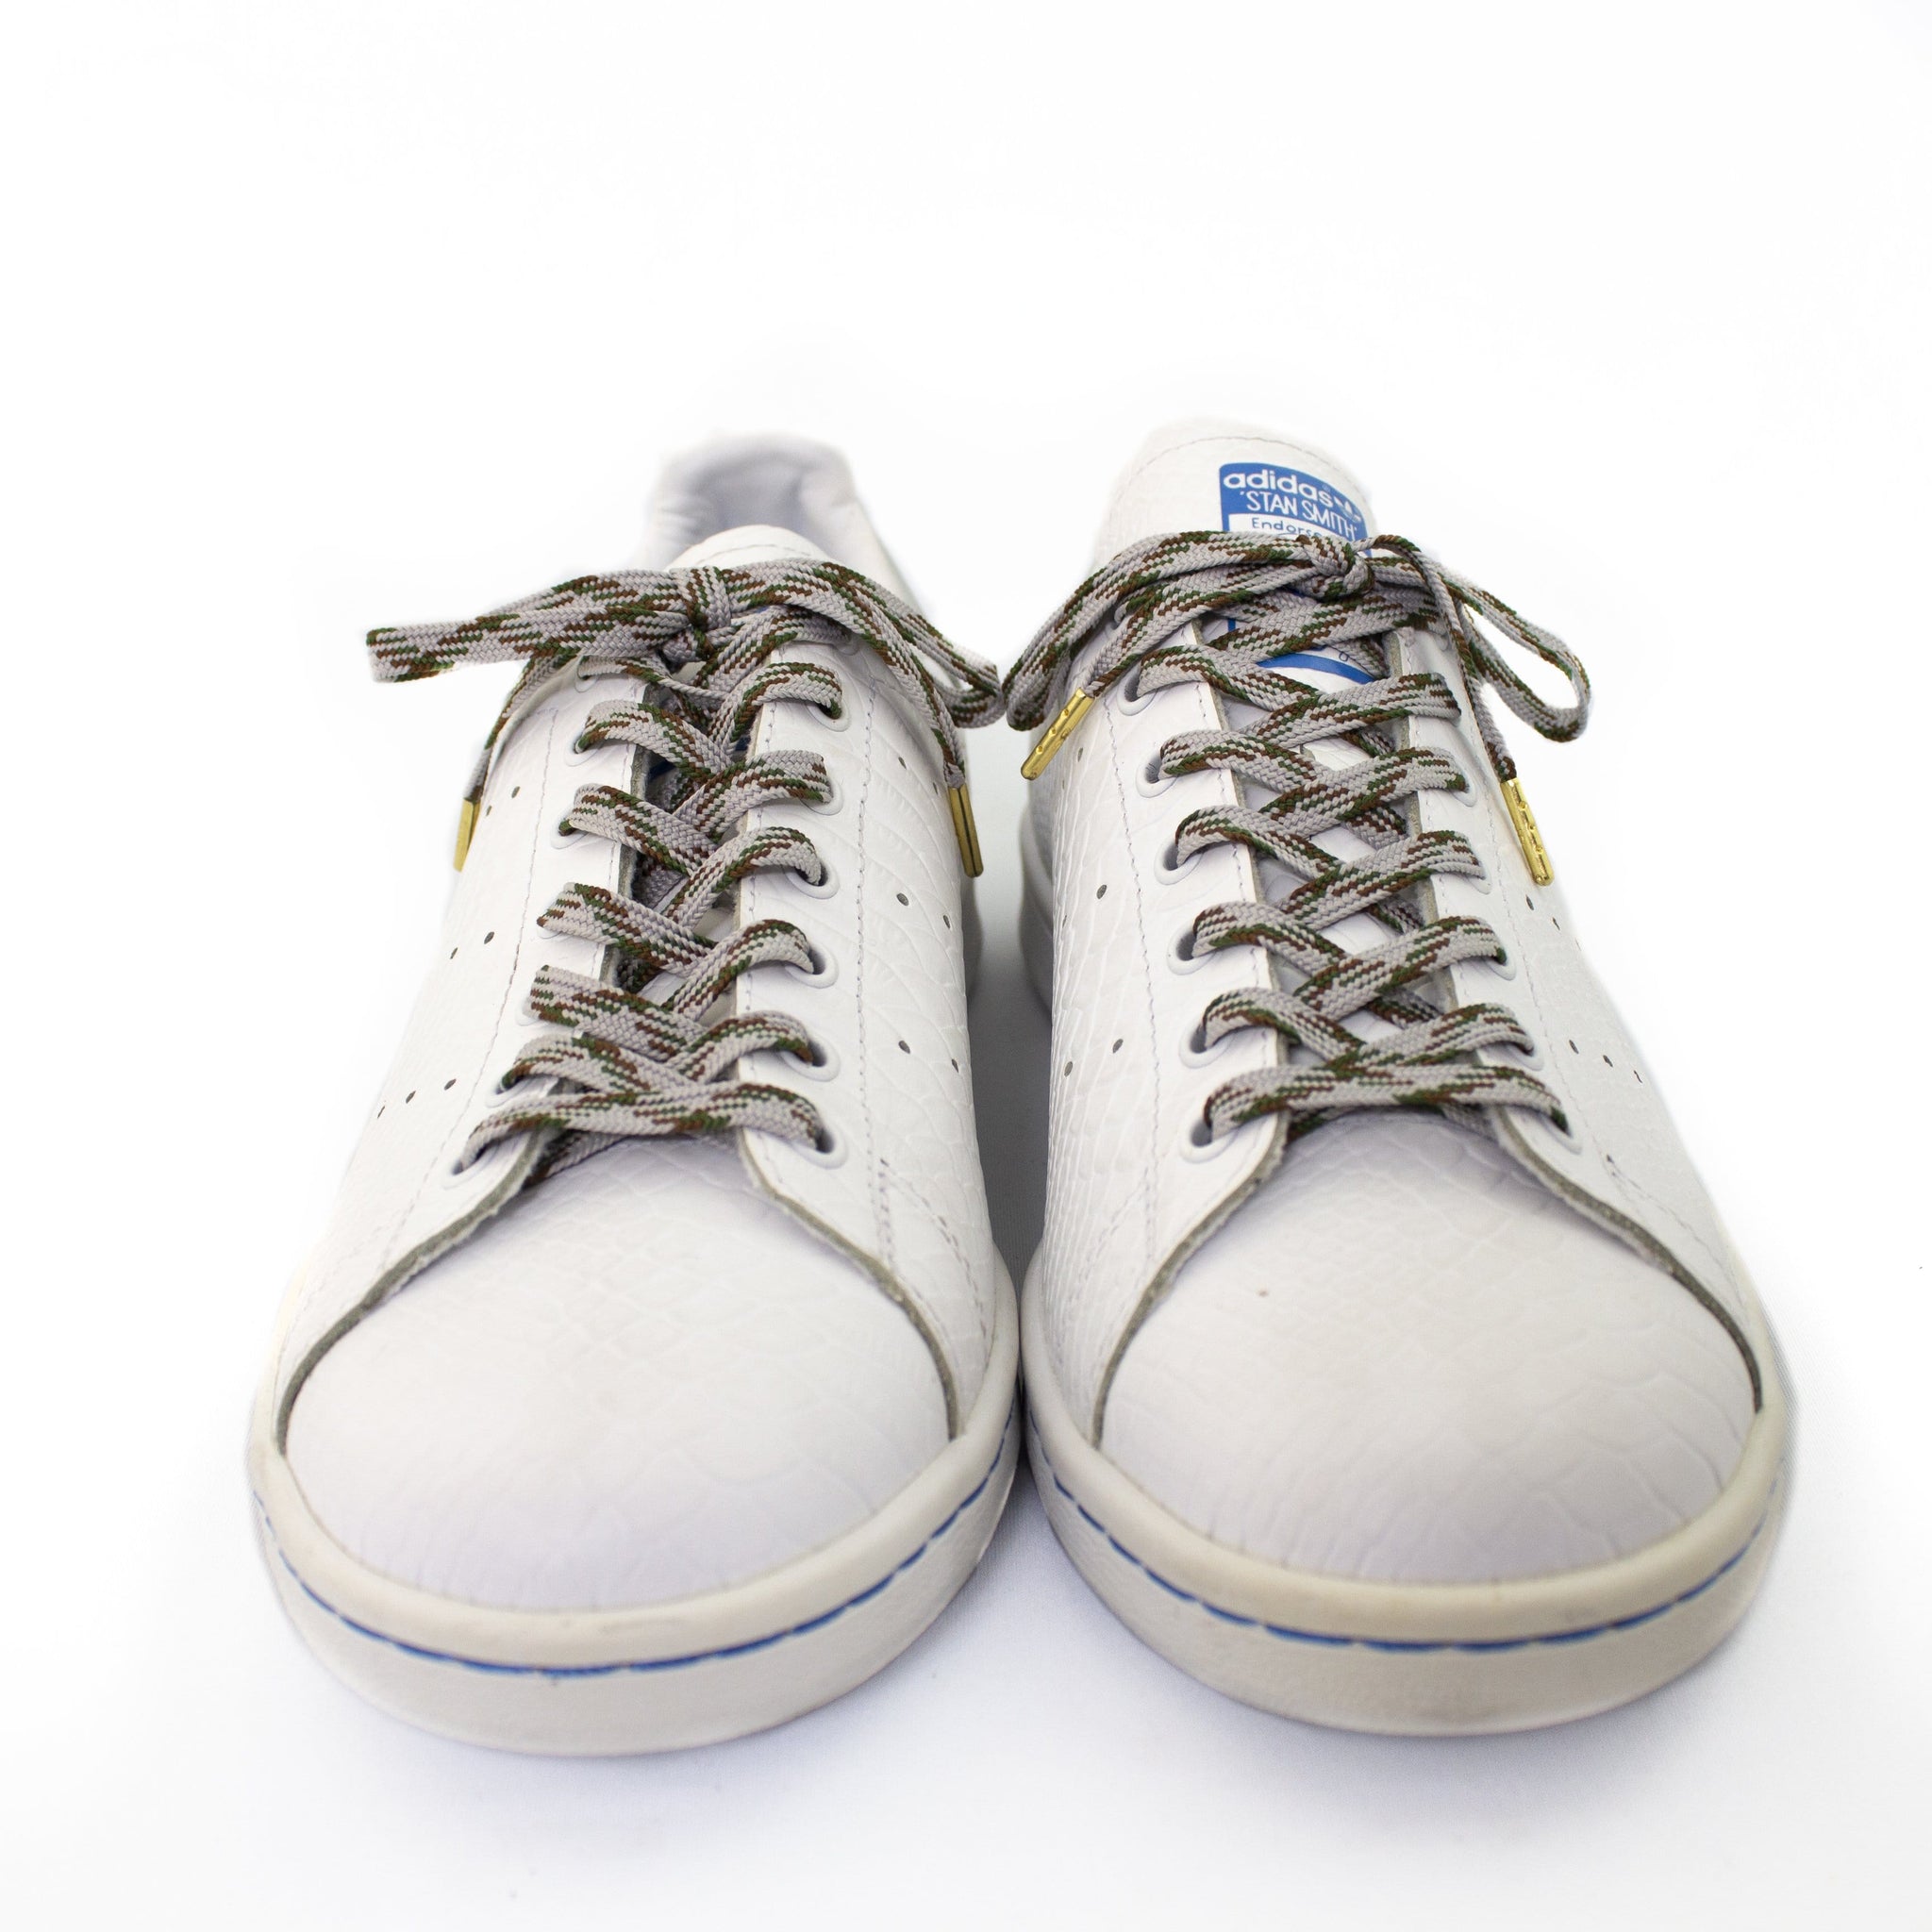 grey color shoe laces